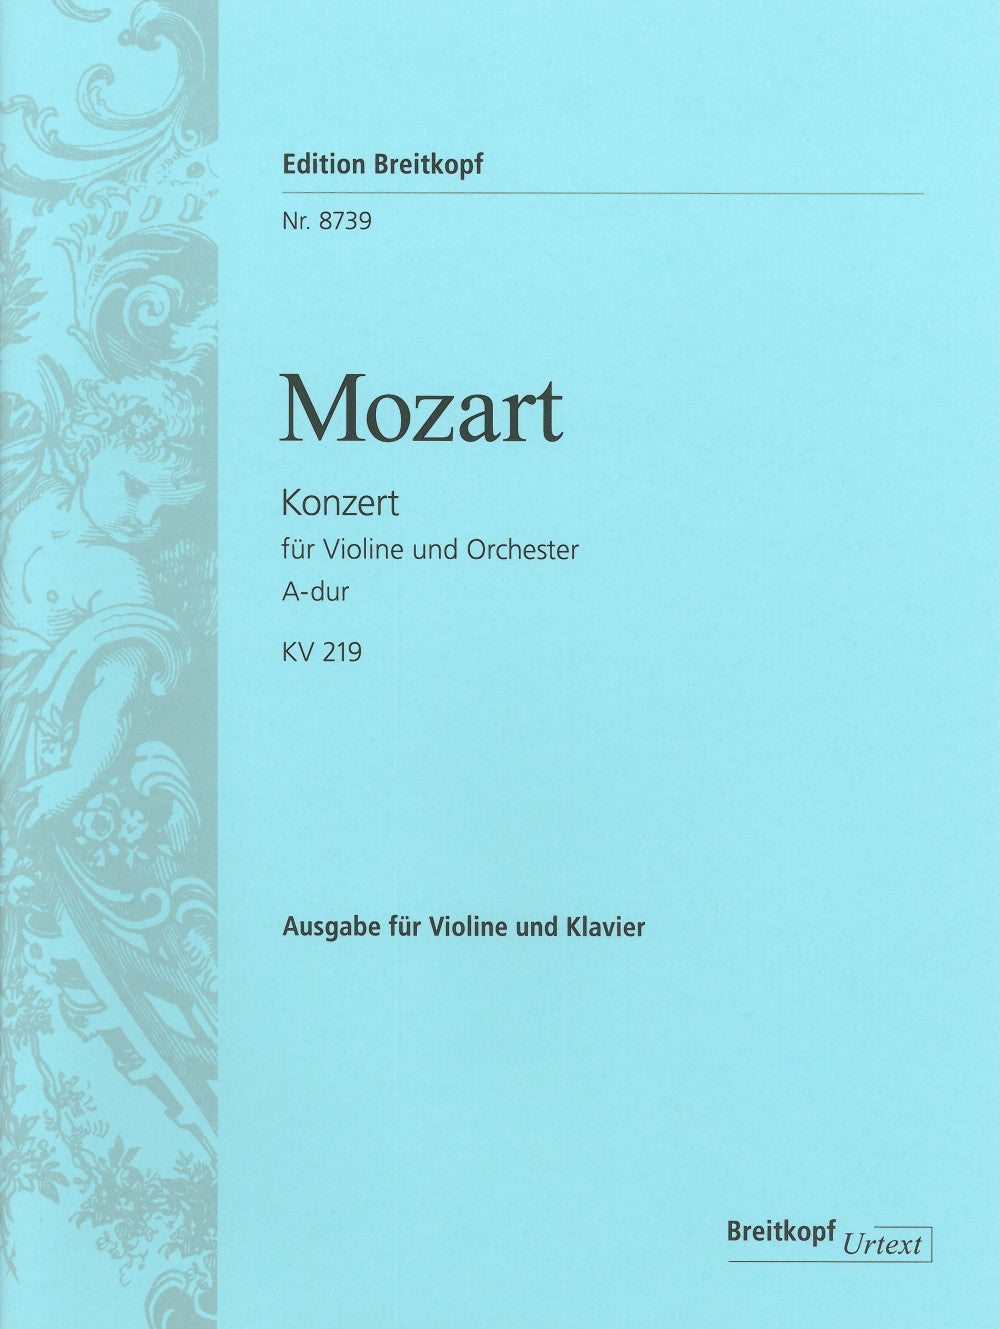 Mozart Violin Concerto No. 5 in A major K. 219